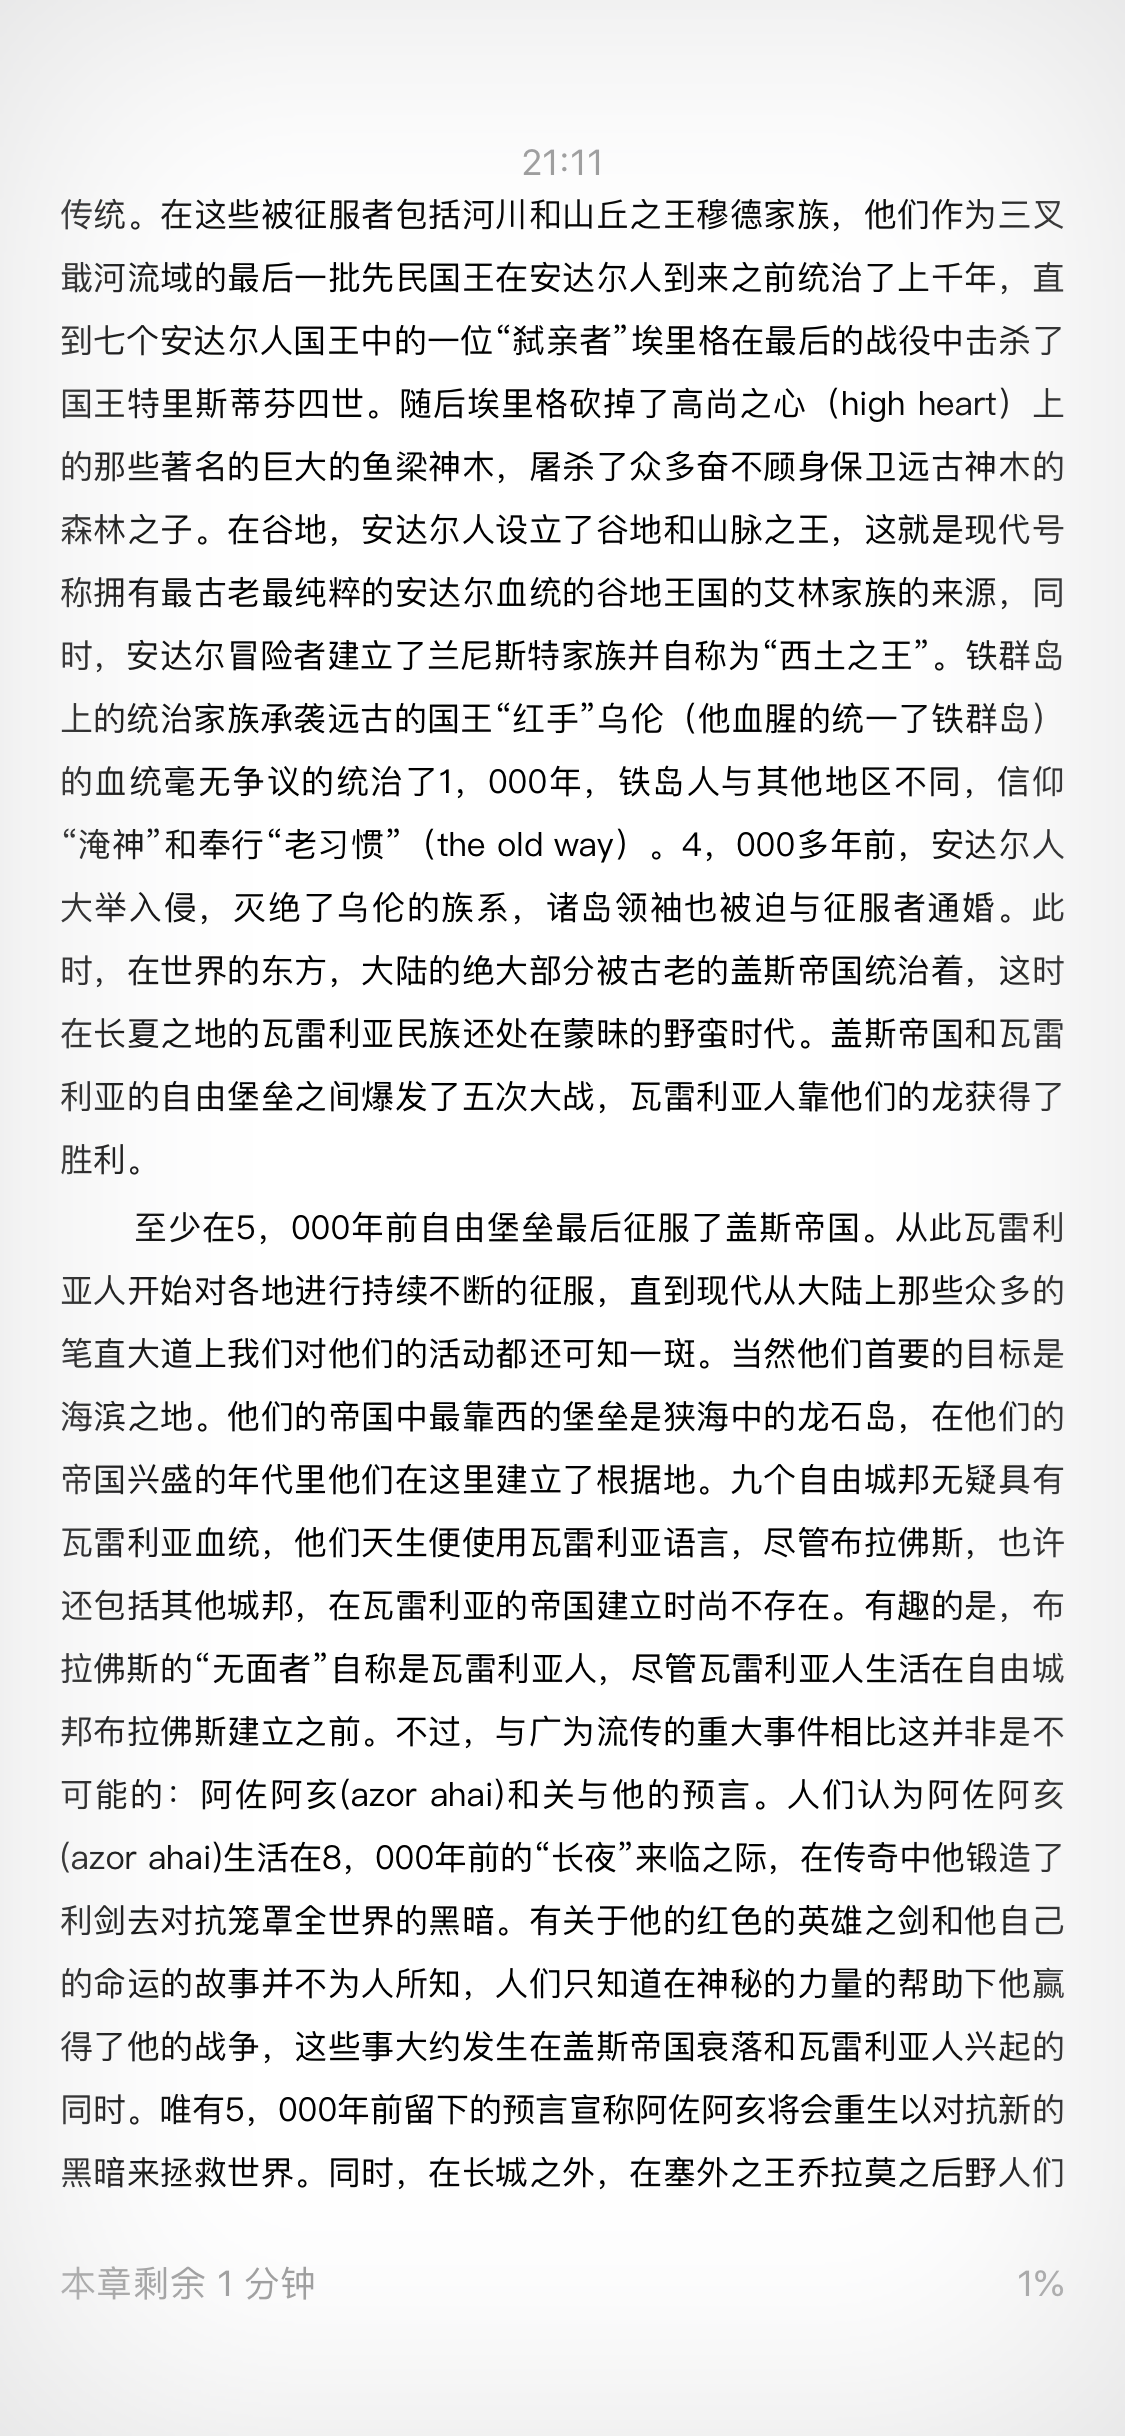 冰与火之歌（卷五）魔龙的狂舞 - 电子书下载（txt+epub+mobi+pdf+iPad+Kindle）笔趣阁、爱好中文网